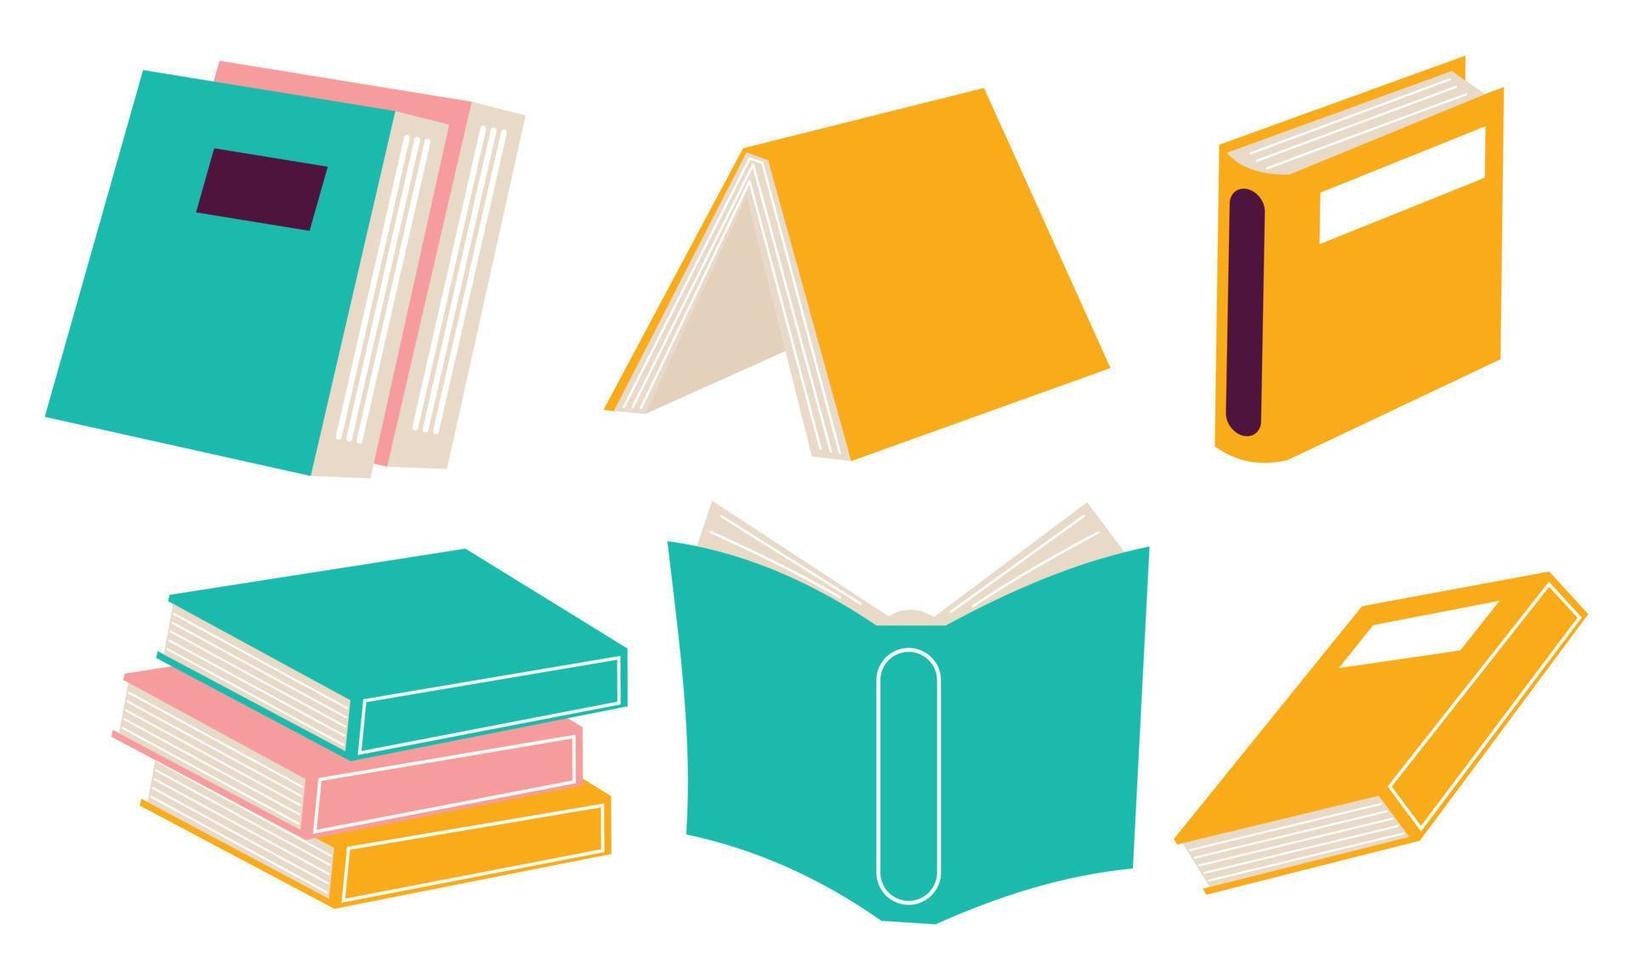 Bücher zum Lesen, Literatur, Wörterbücher, Enzyklopädien, Planer mit Lesezeichen. vektor